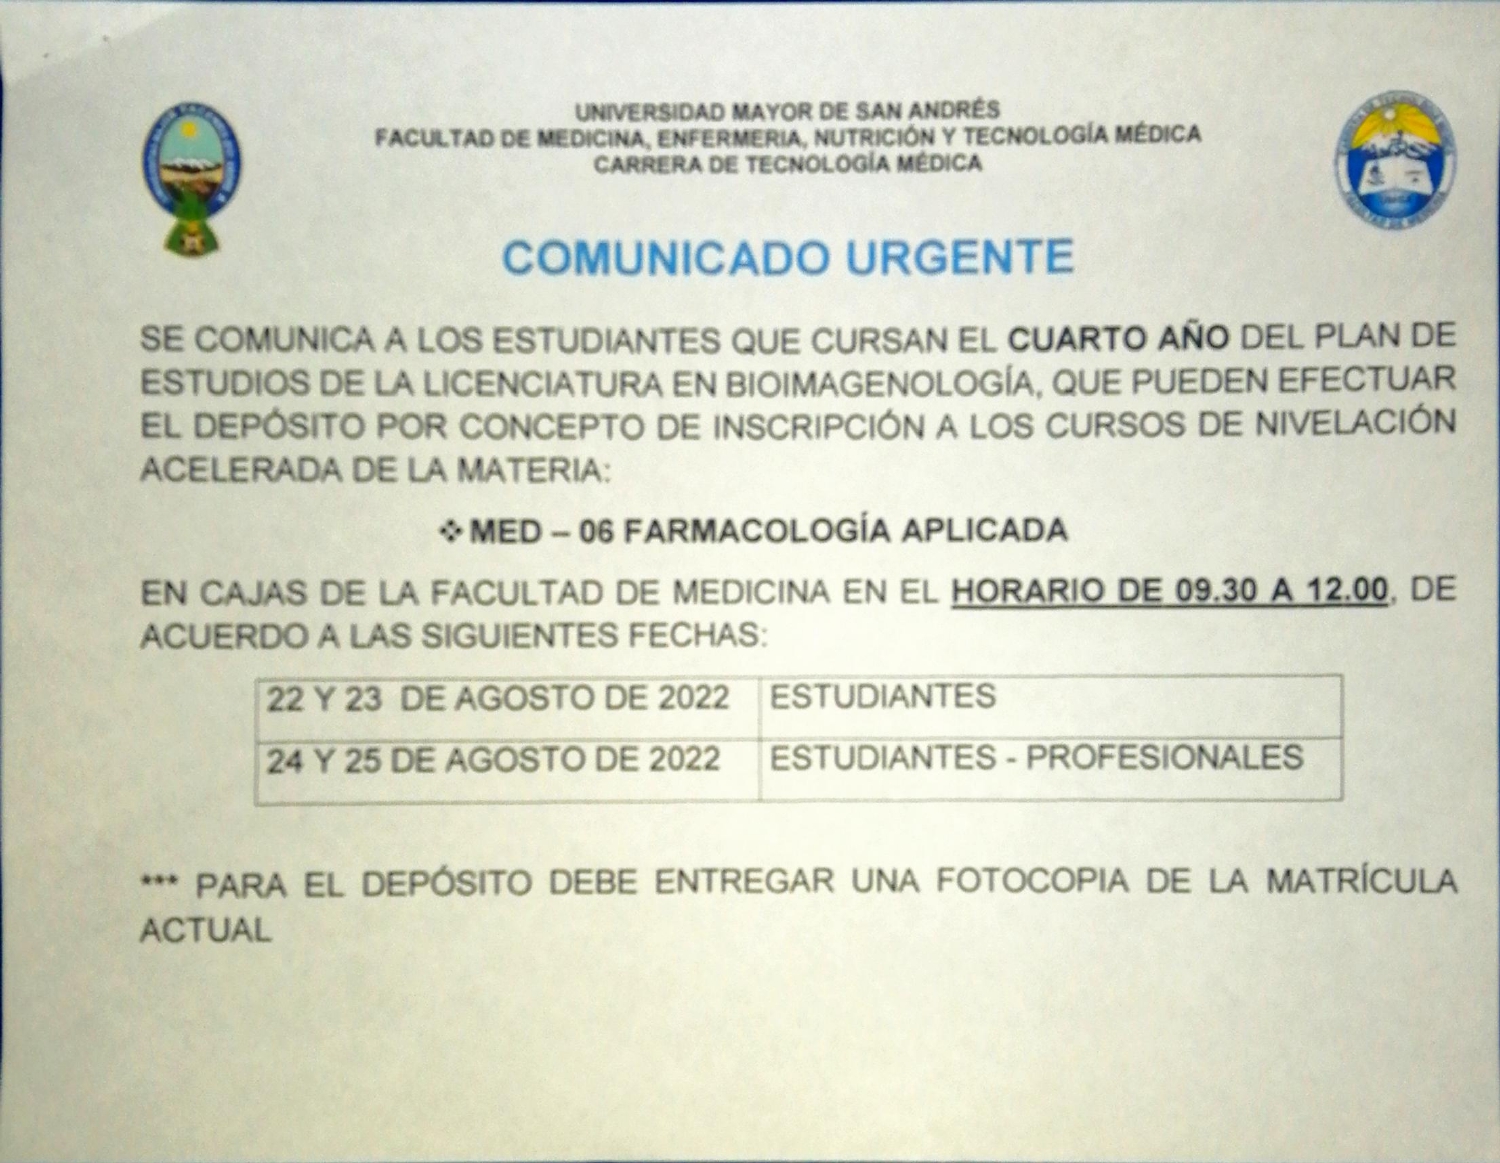 cursos de nivelacion farmacologia - CARRERA DE TECNOLOGÍA MEDICA -  Universidad Mayor de San Andrés